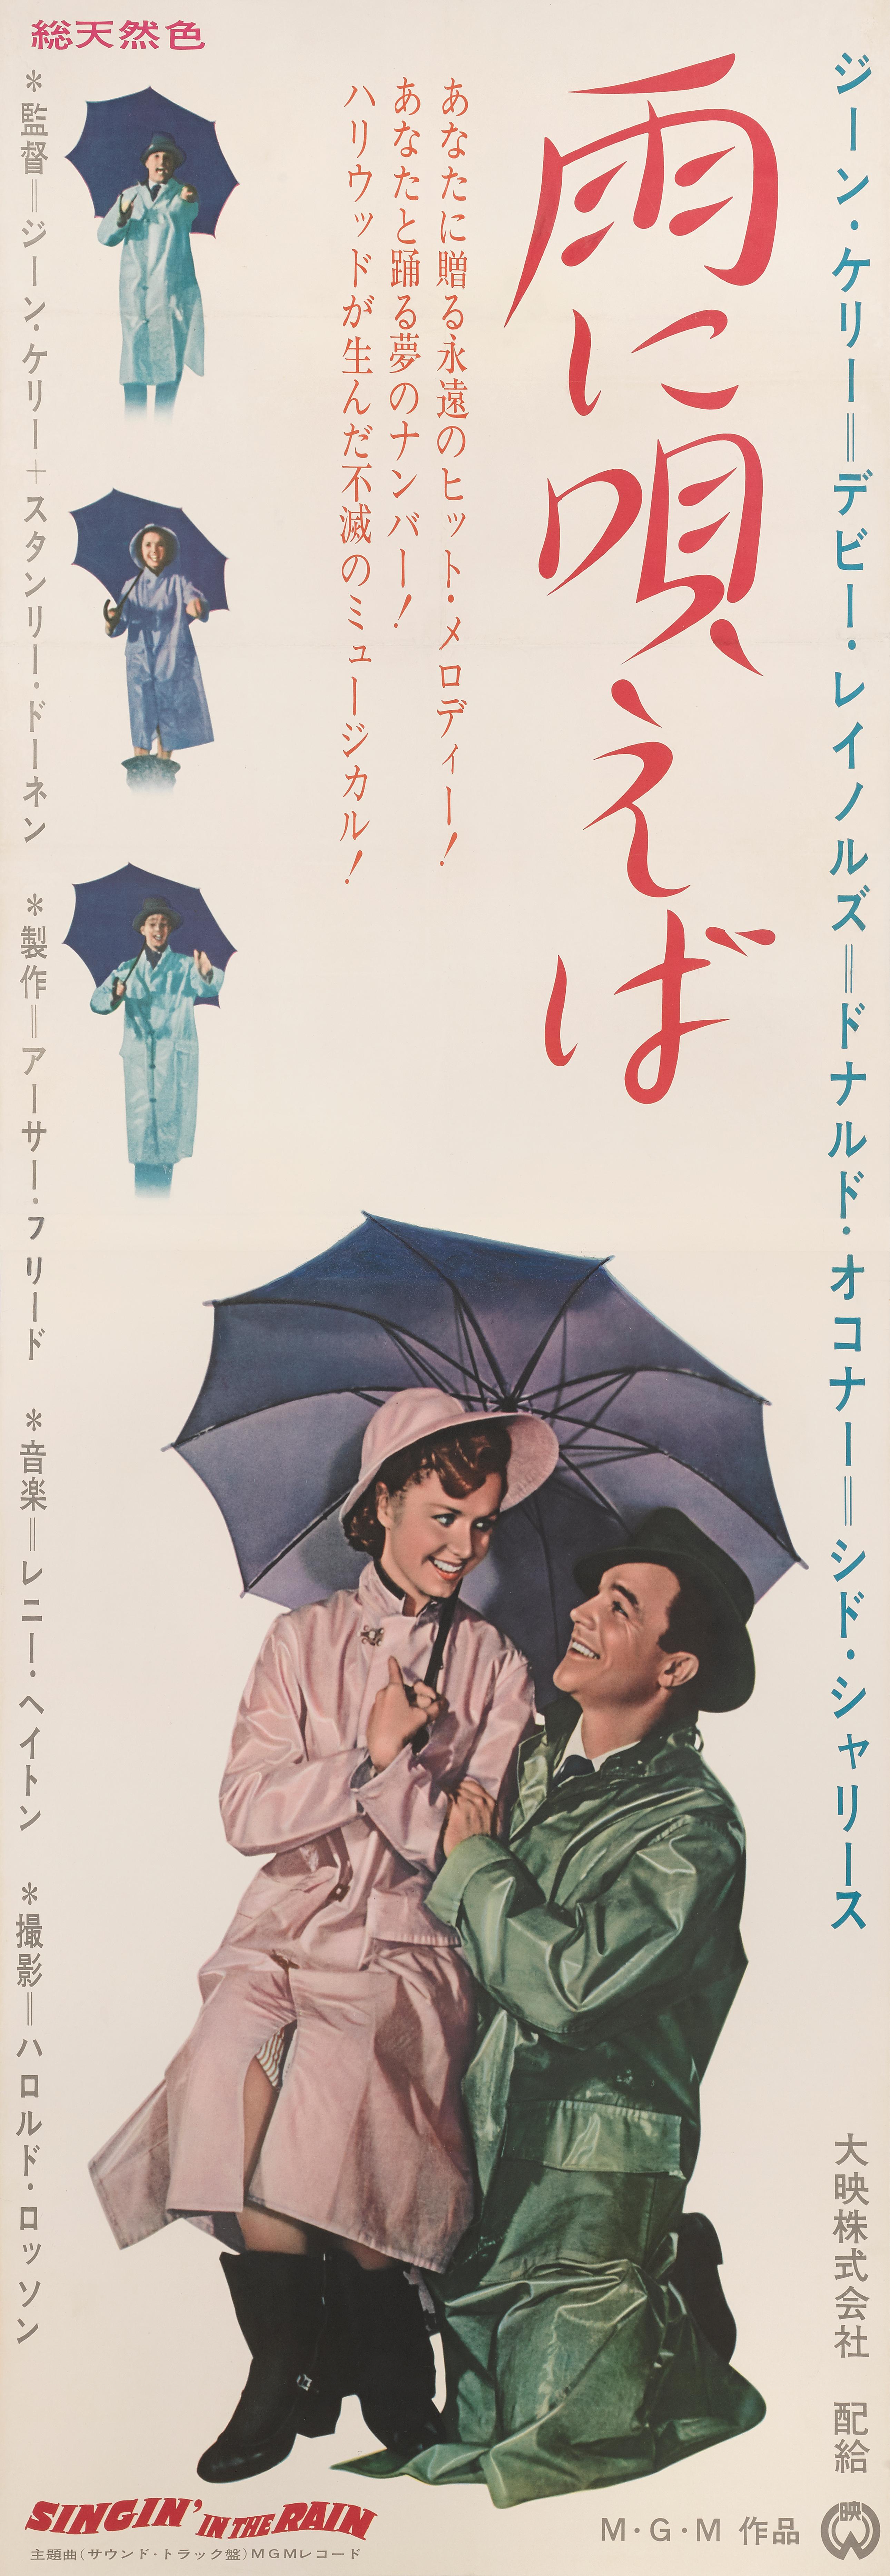 Japonais The Singin' in the Rain (Chantons sous la pluie) en vente